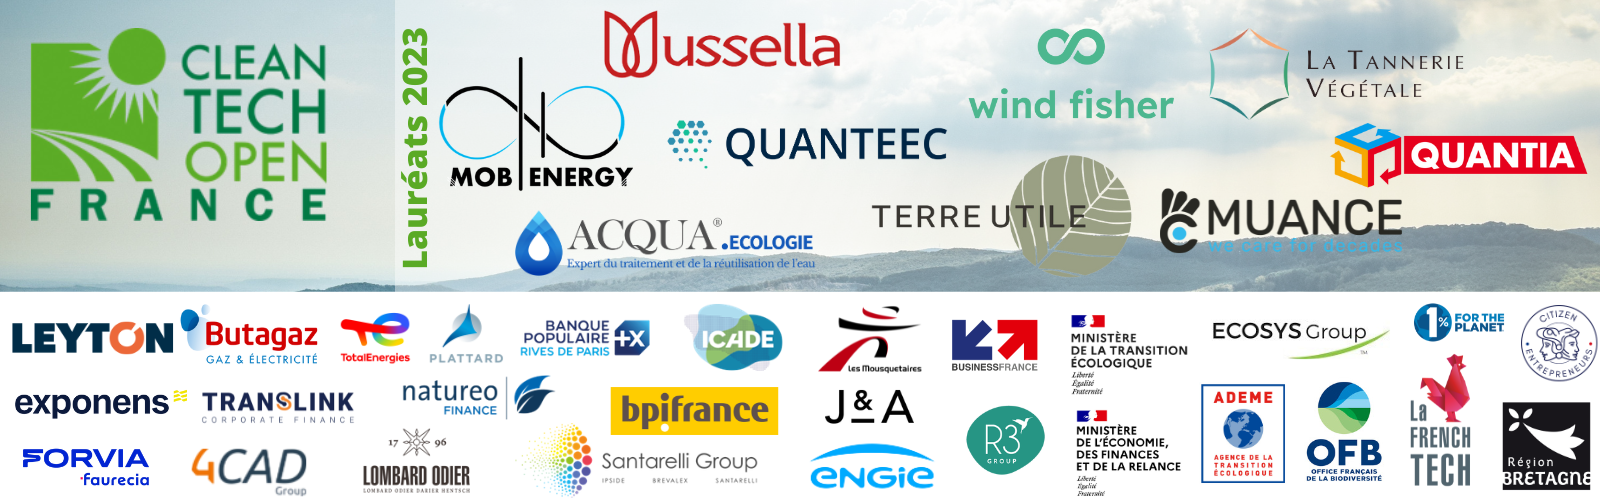 Bannière de Cleantech Open France